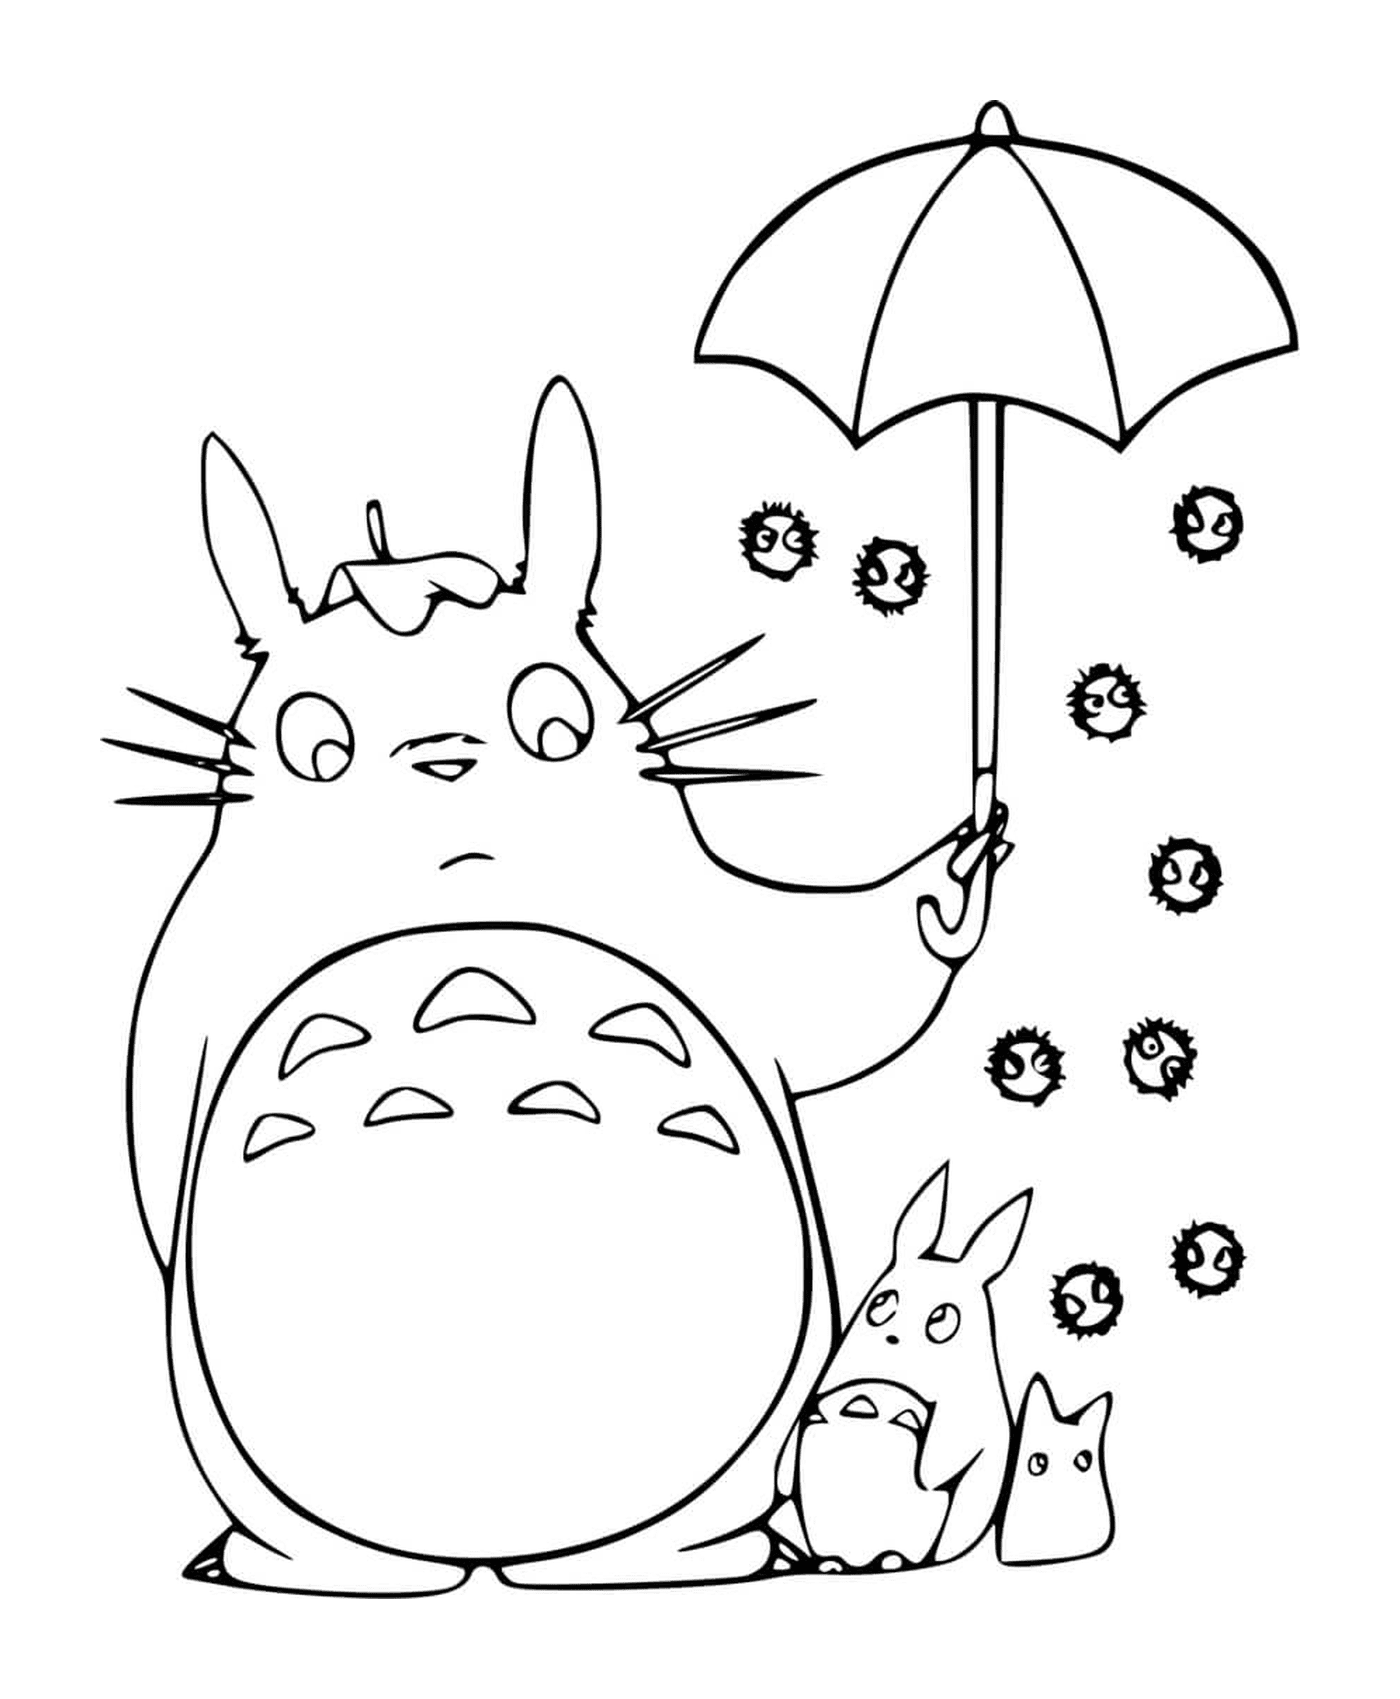  Totoro sosteniendo un paraguas abierto con un niño 